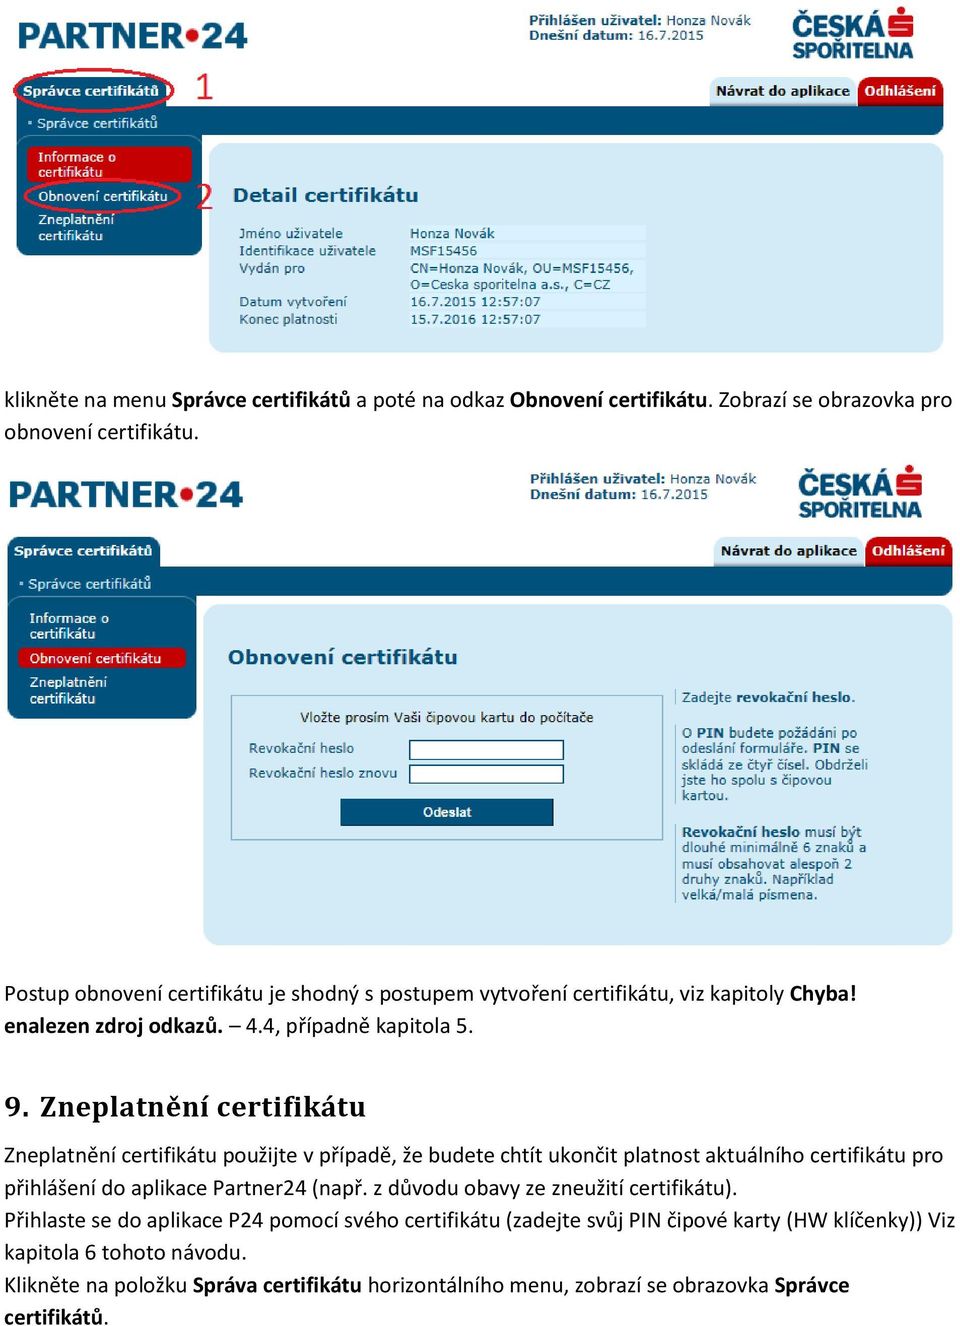 Zneplatnění certifikátu Zneplatnění certifikátu použijte v případě, že budete chtít ukončit platnost aktuálního certifikátu pro přihlášení do aplikace Partner24 (např.